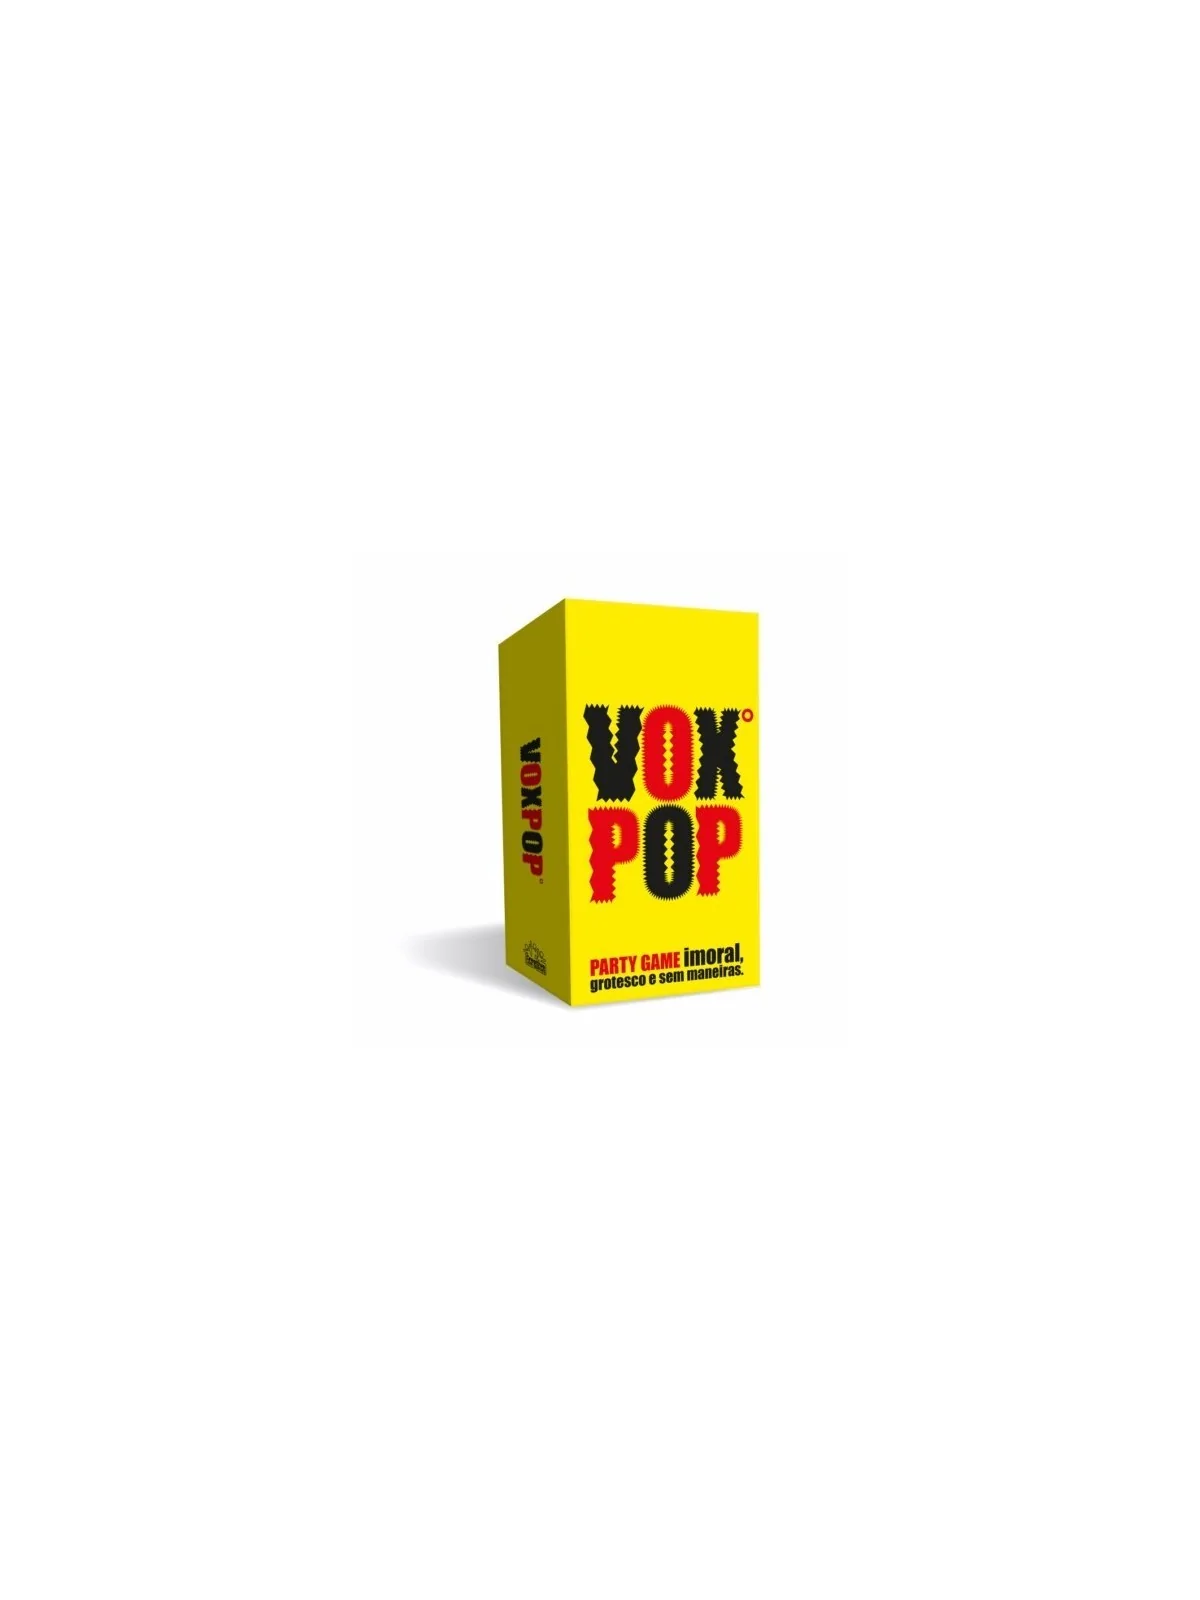 Comprar Vox Pop barato al mejor precio 24,25 € de Creative Toys